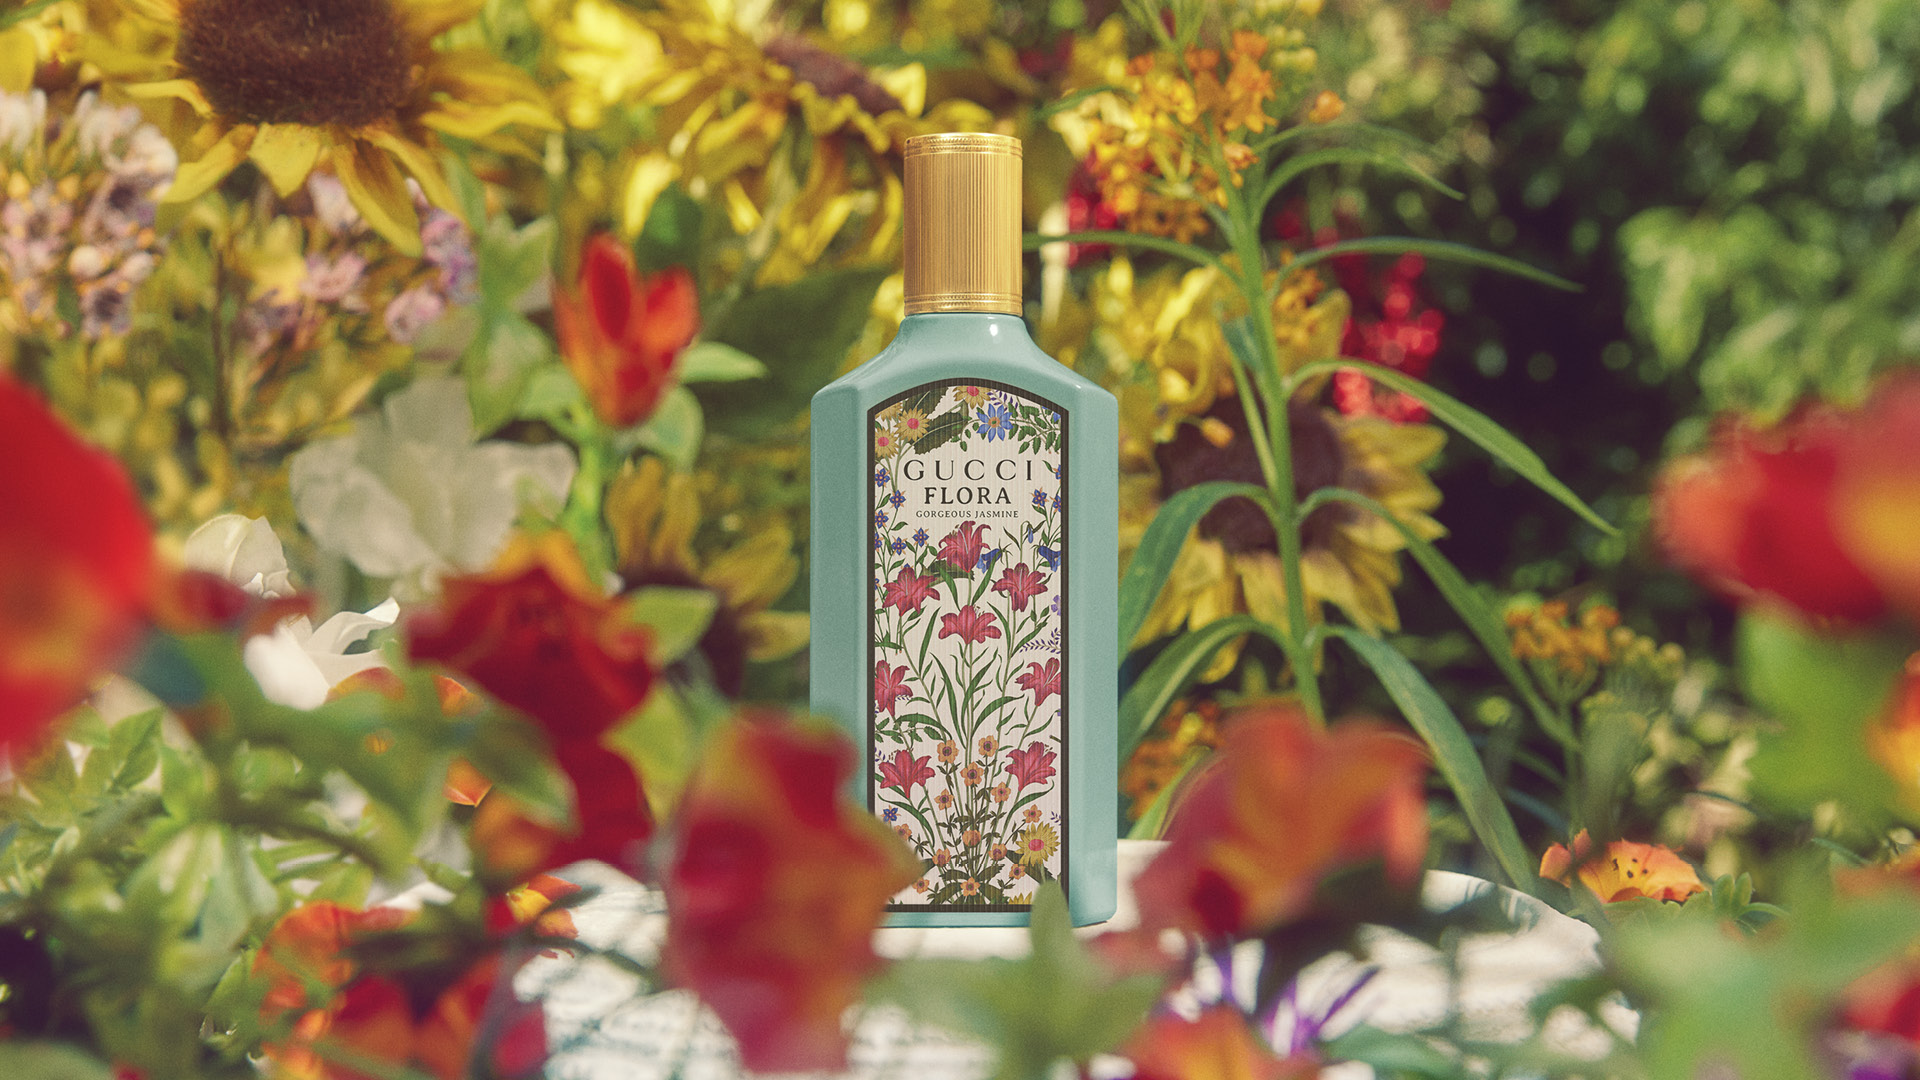 Nakon Gorgeous Gardenie, koja je potpuno promenila dizajn bočica Gucci Flora linije mirisa, Gorgeous Jasmine se pridružuje novoj i osnaženoj kolekciji.